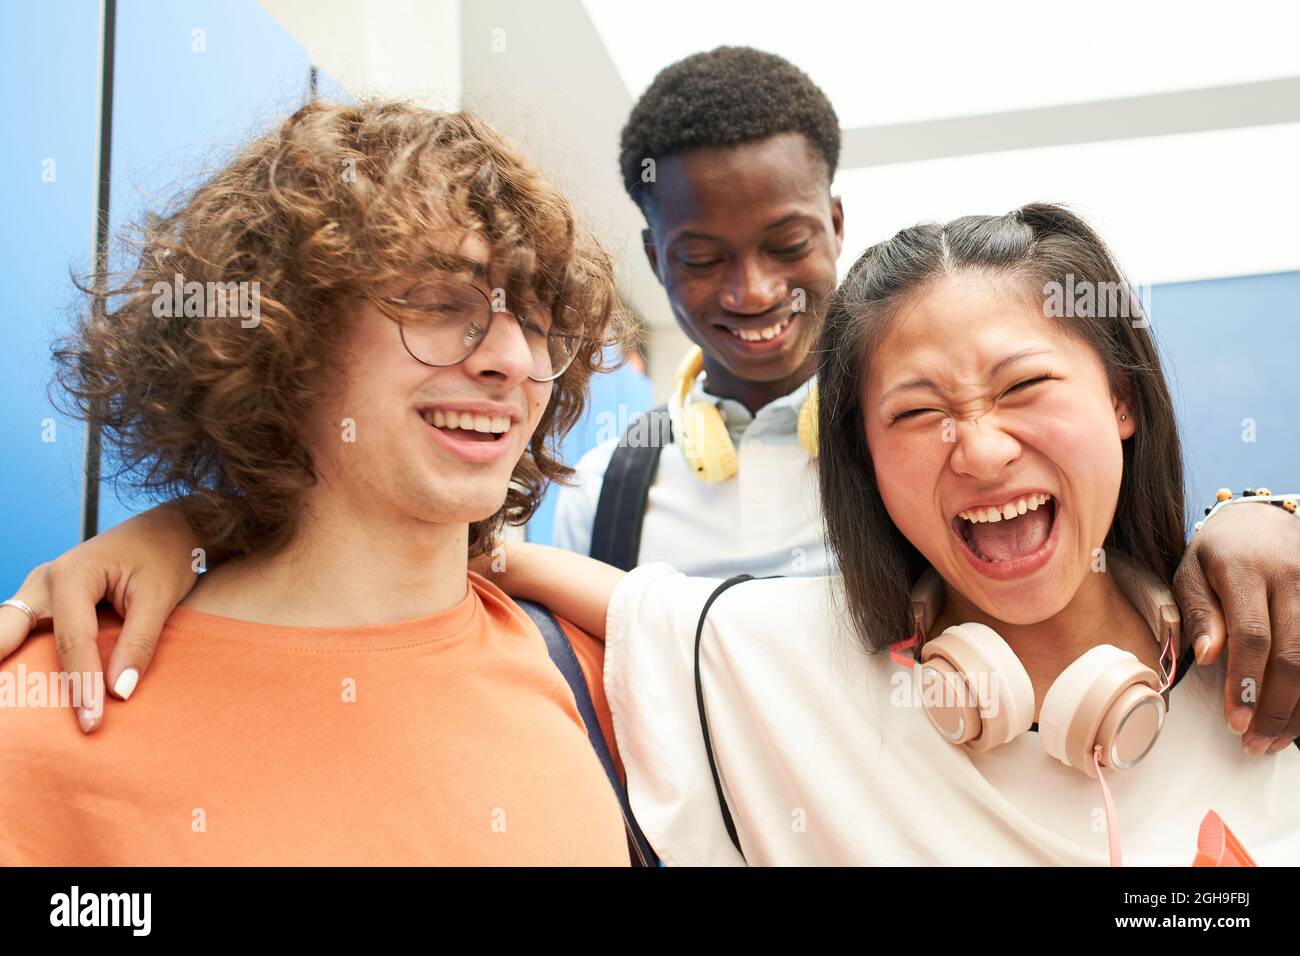 Porträt von drei multirassischen Studenten, die die Kamera mit einem Lächeln auf eine High School anschauten. Stockfoto